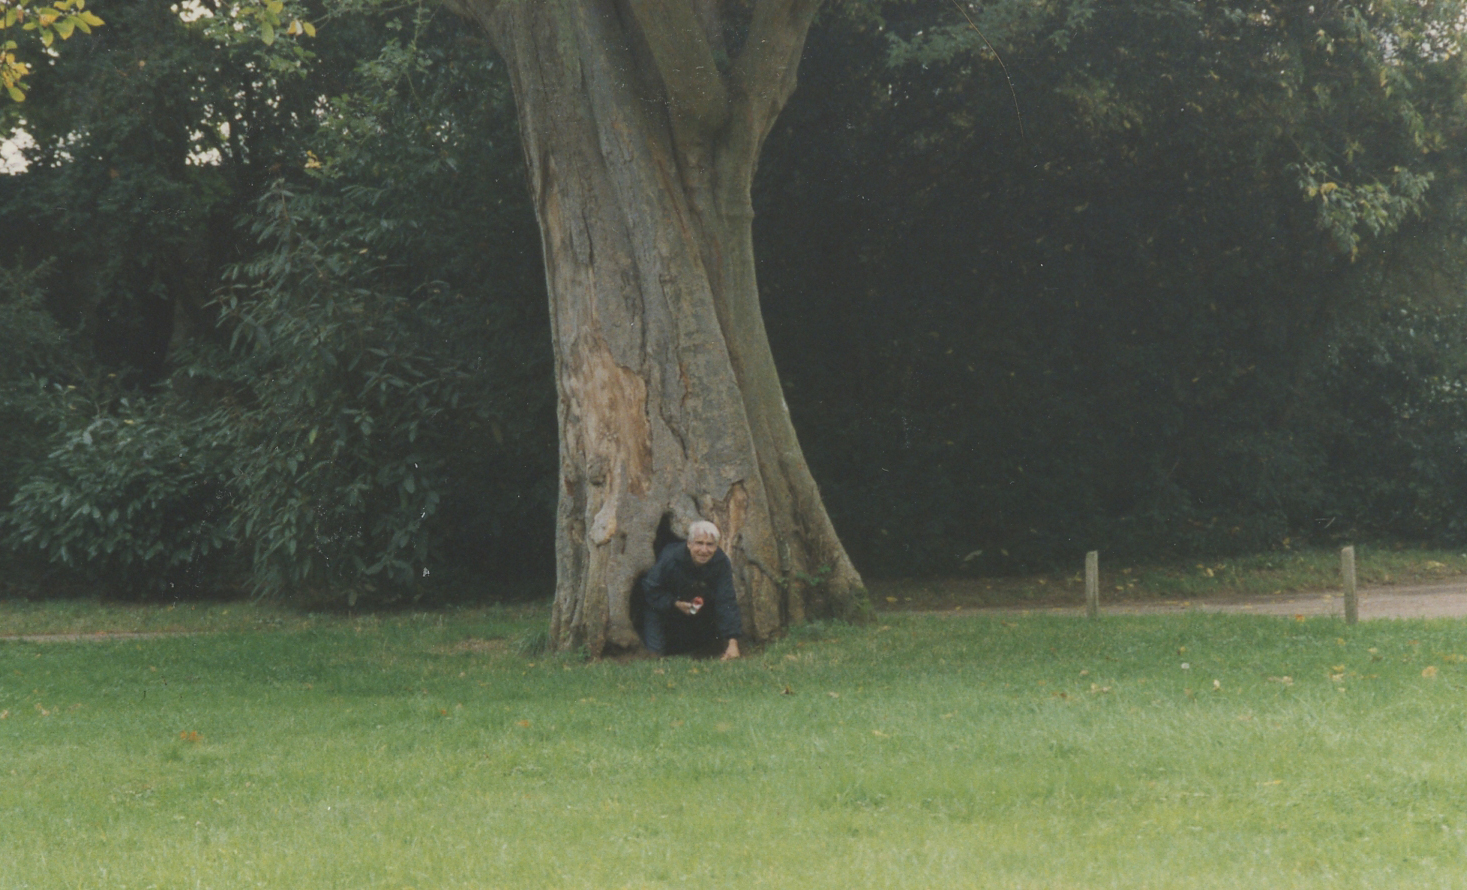 Henri Bérenger under the chestnut tree in Versailles
Photo © 1996 Ann James Massey